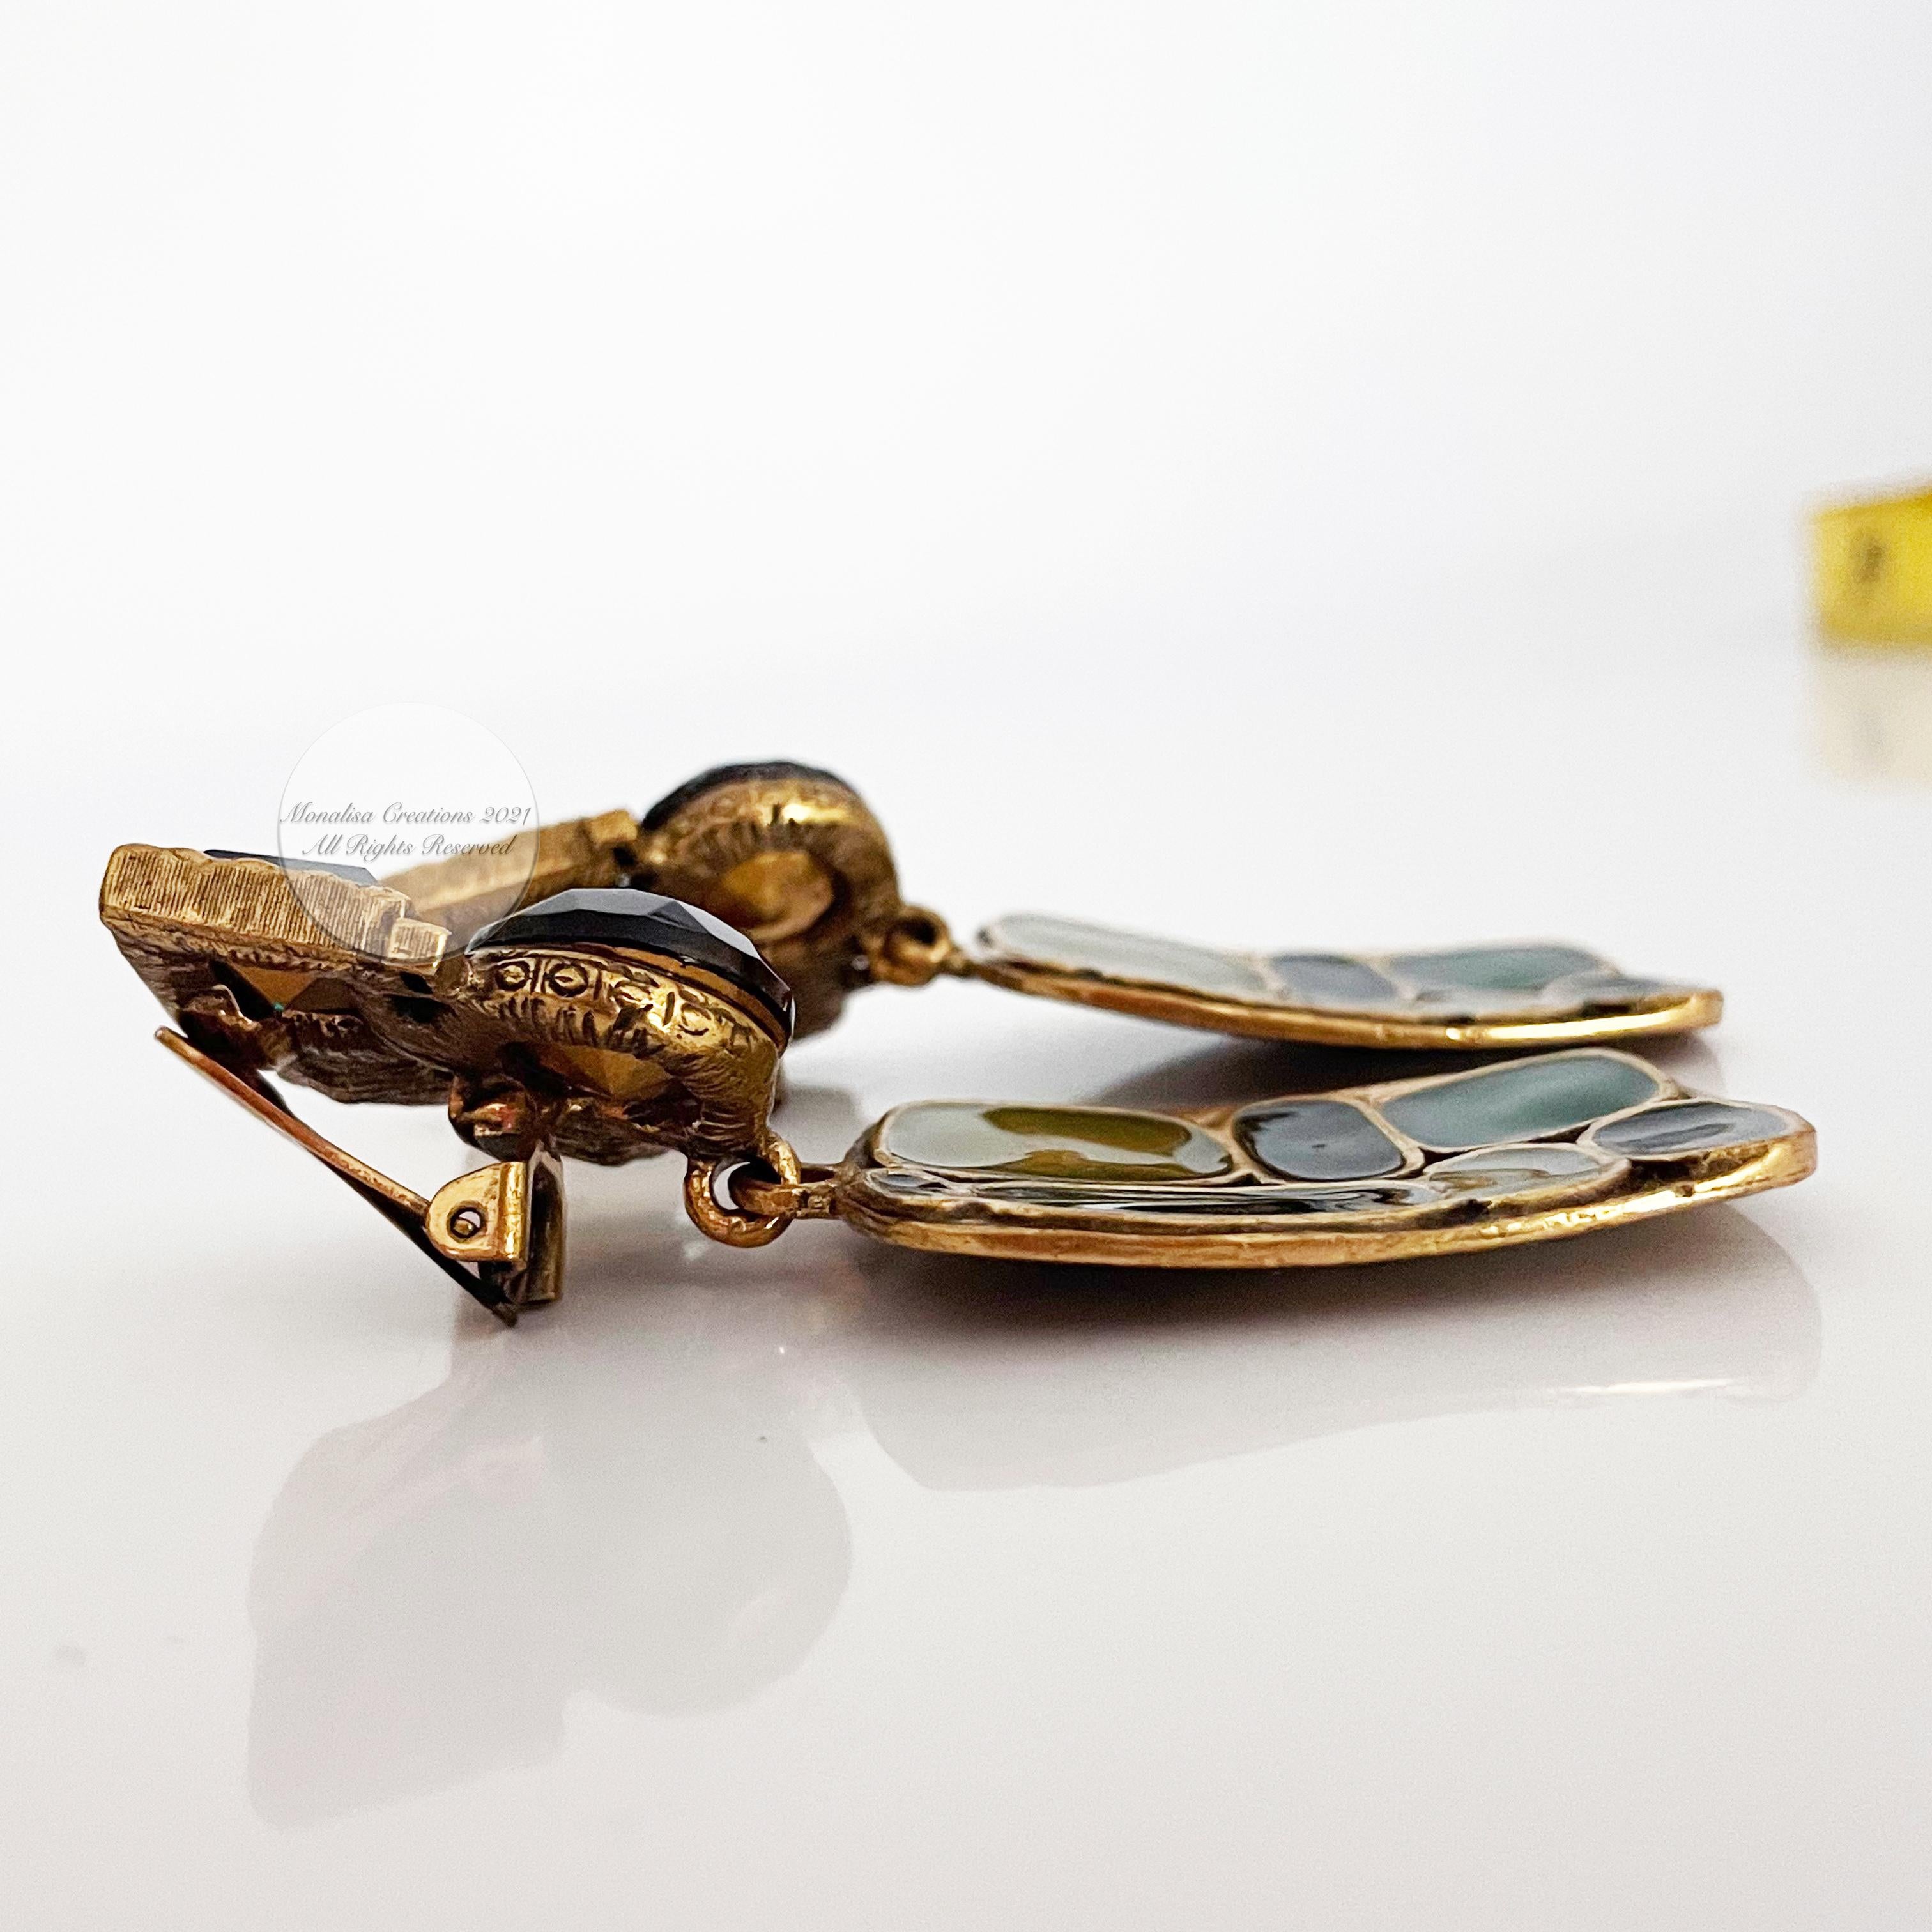 Oscar de la Renta Earrings Modernist Dangle Statement Jewelry Vintage 3in Drop  For Sale 3